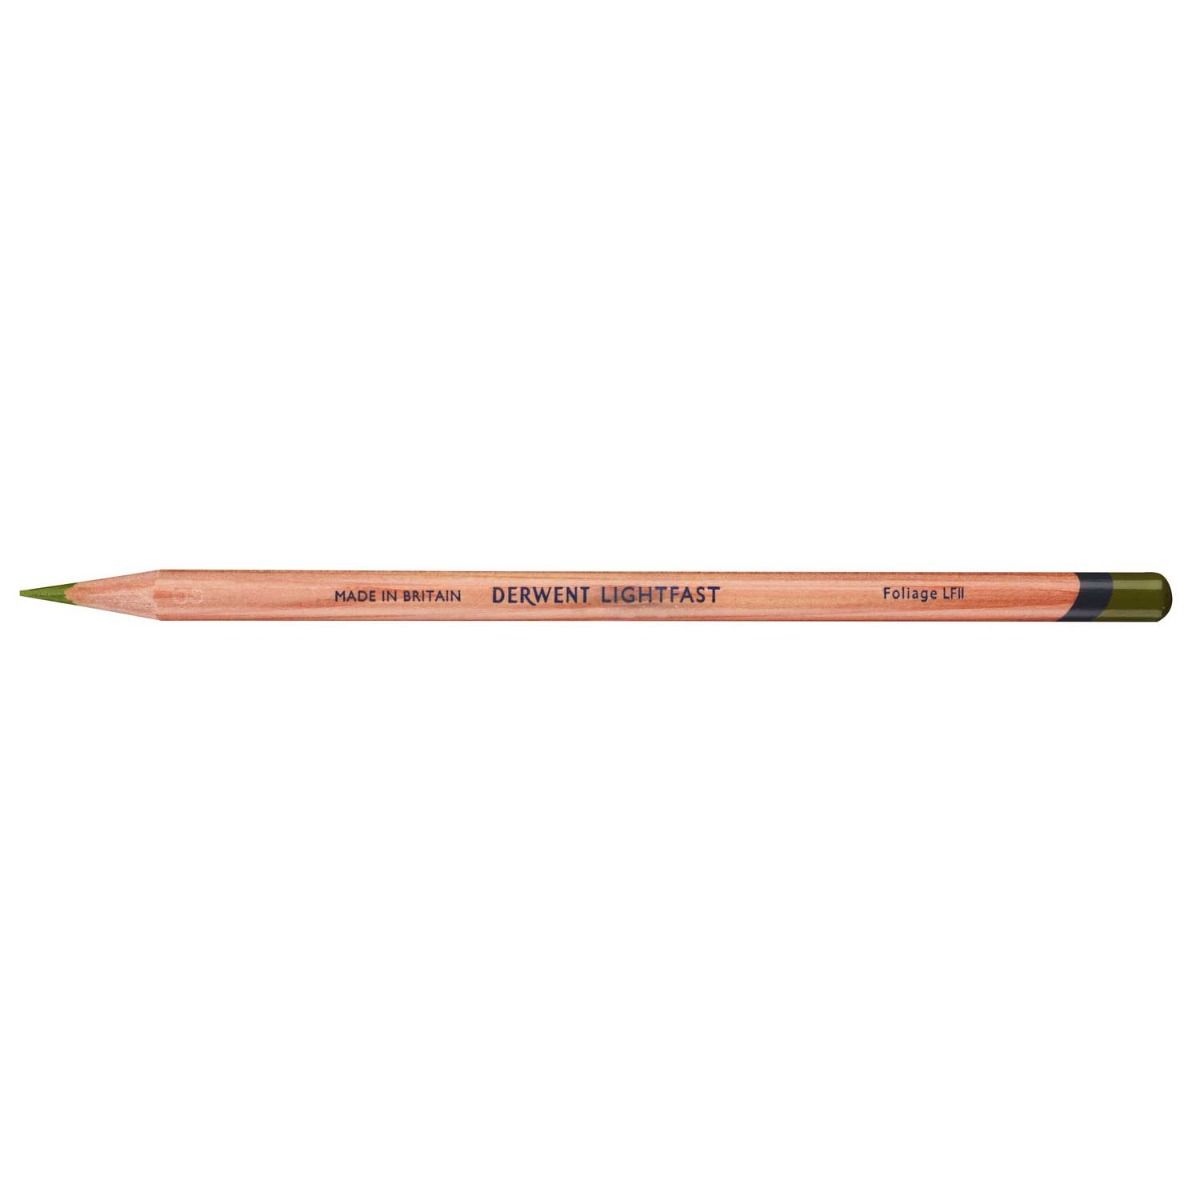 Derwent Lightfast Pencil Colour: Foliage